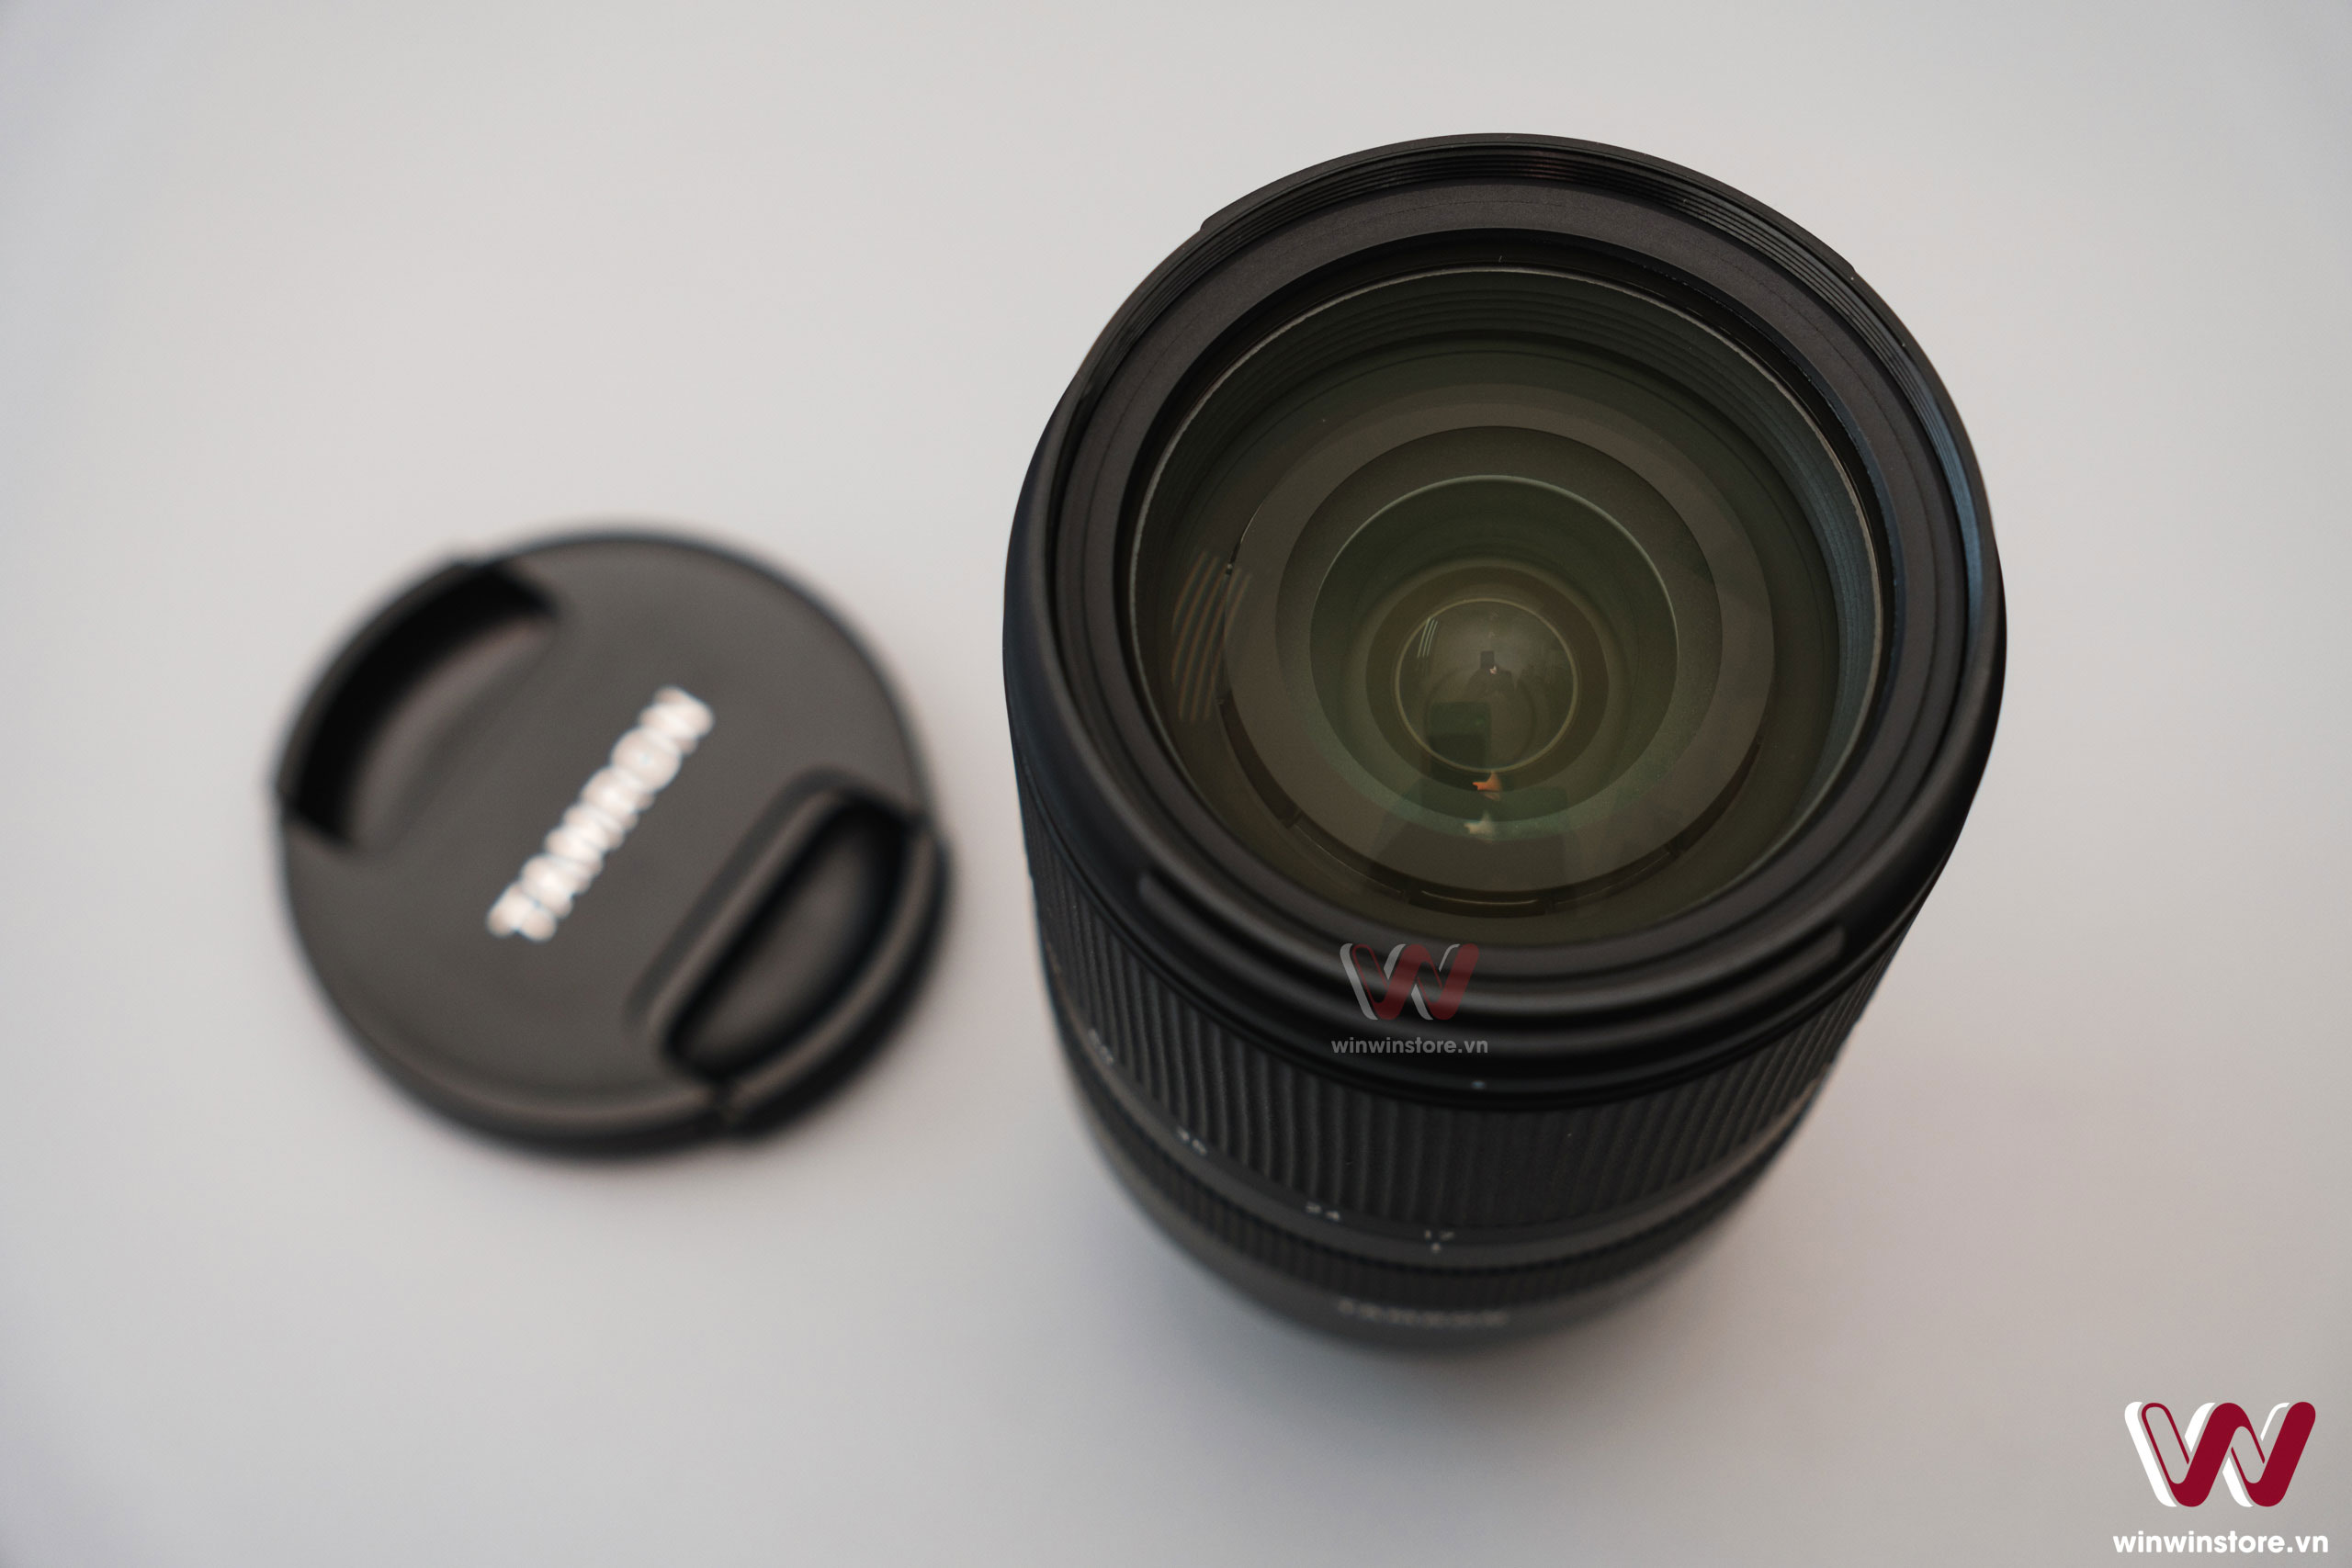 Trên tay ống kính Tamron 17–70mm F2.8 Di III-A VC RXD cho Fujifilm: Tiêu cự rất đa dụng và linh hoạt, khẩu độ F2.8 toàn dải